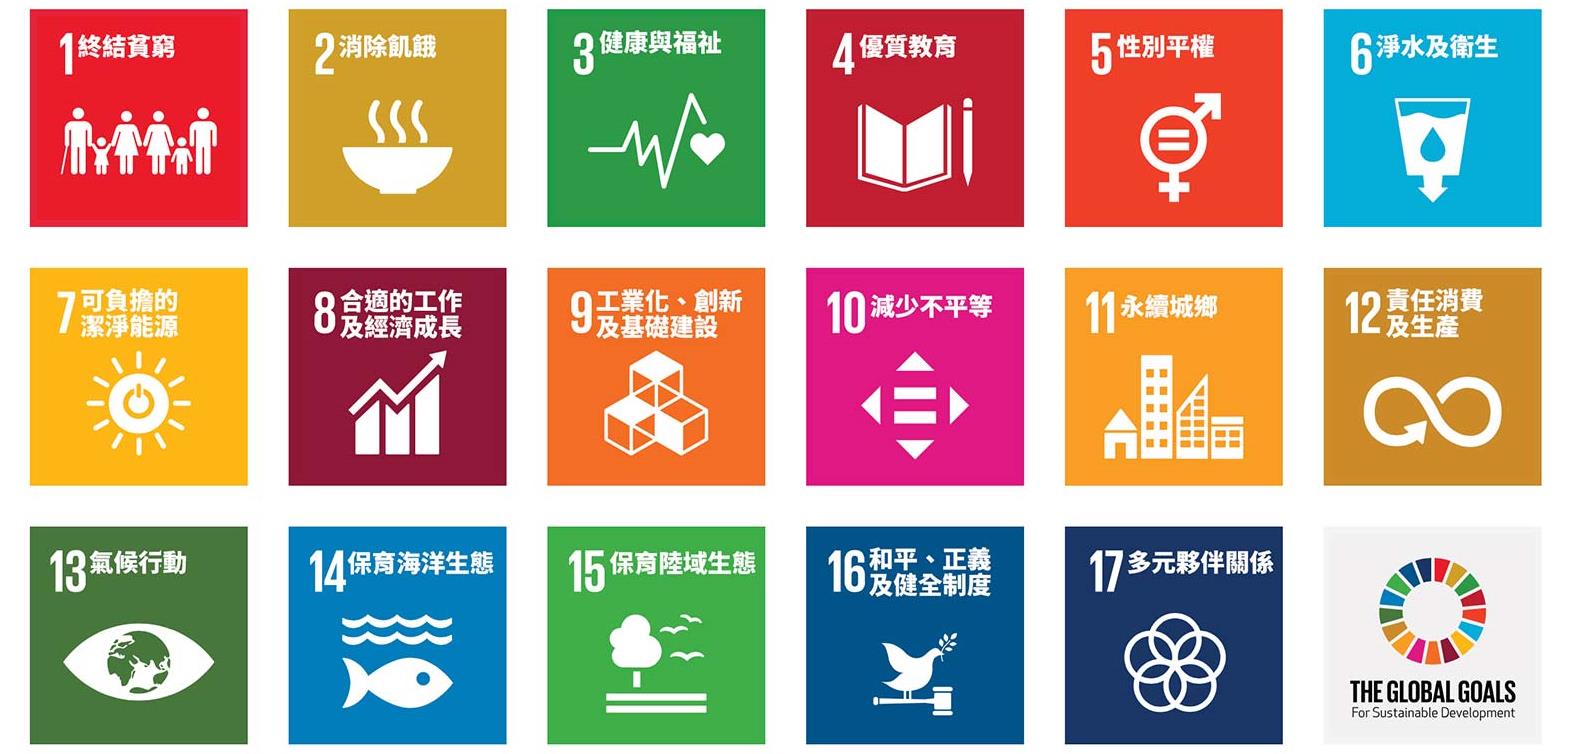 聯合國永續發展指標